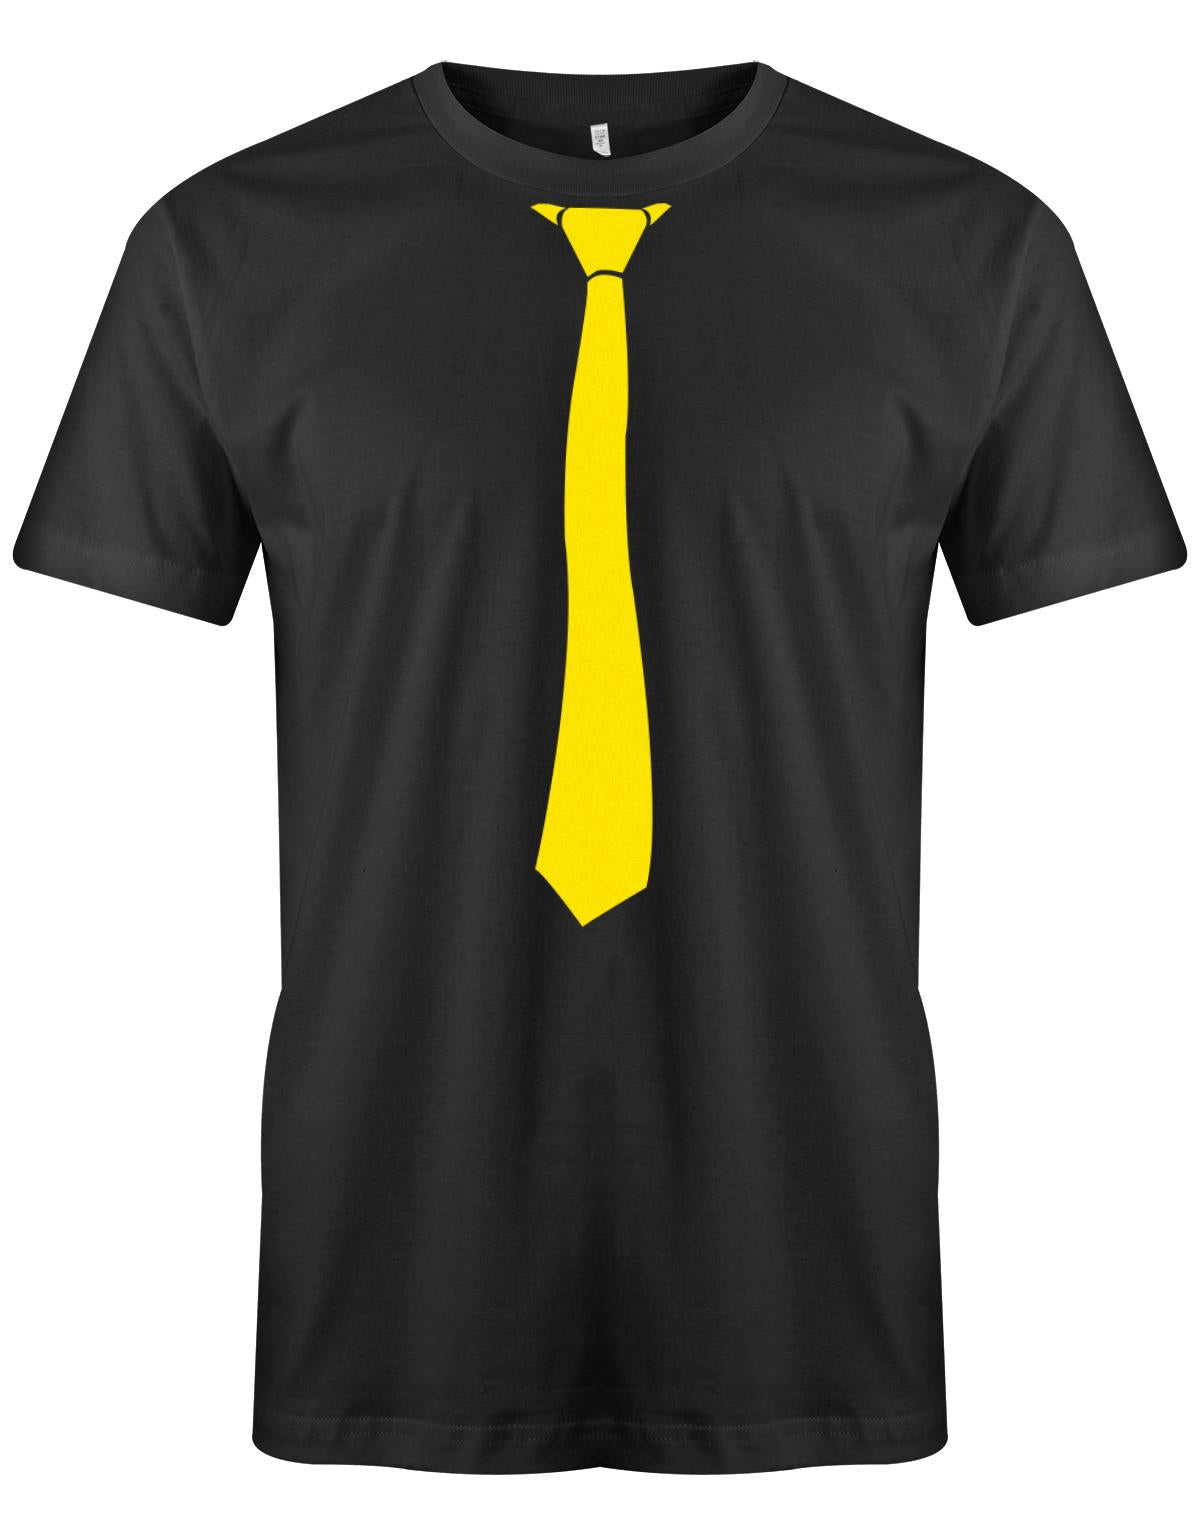 Krawatte-Sportlich-Herren-Shirt-JGA-Schwarz-Gelb